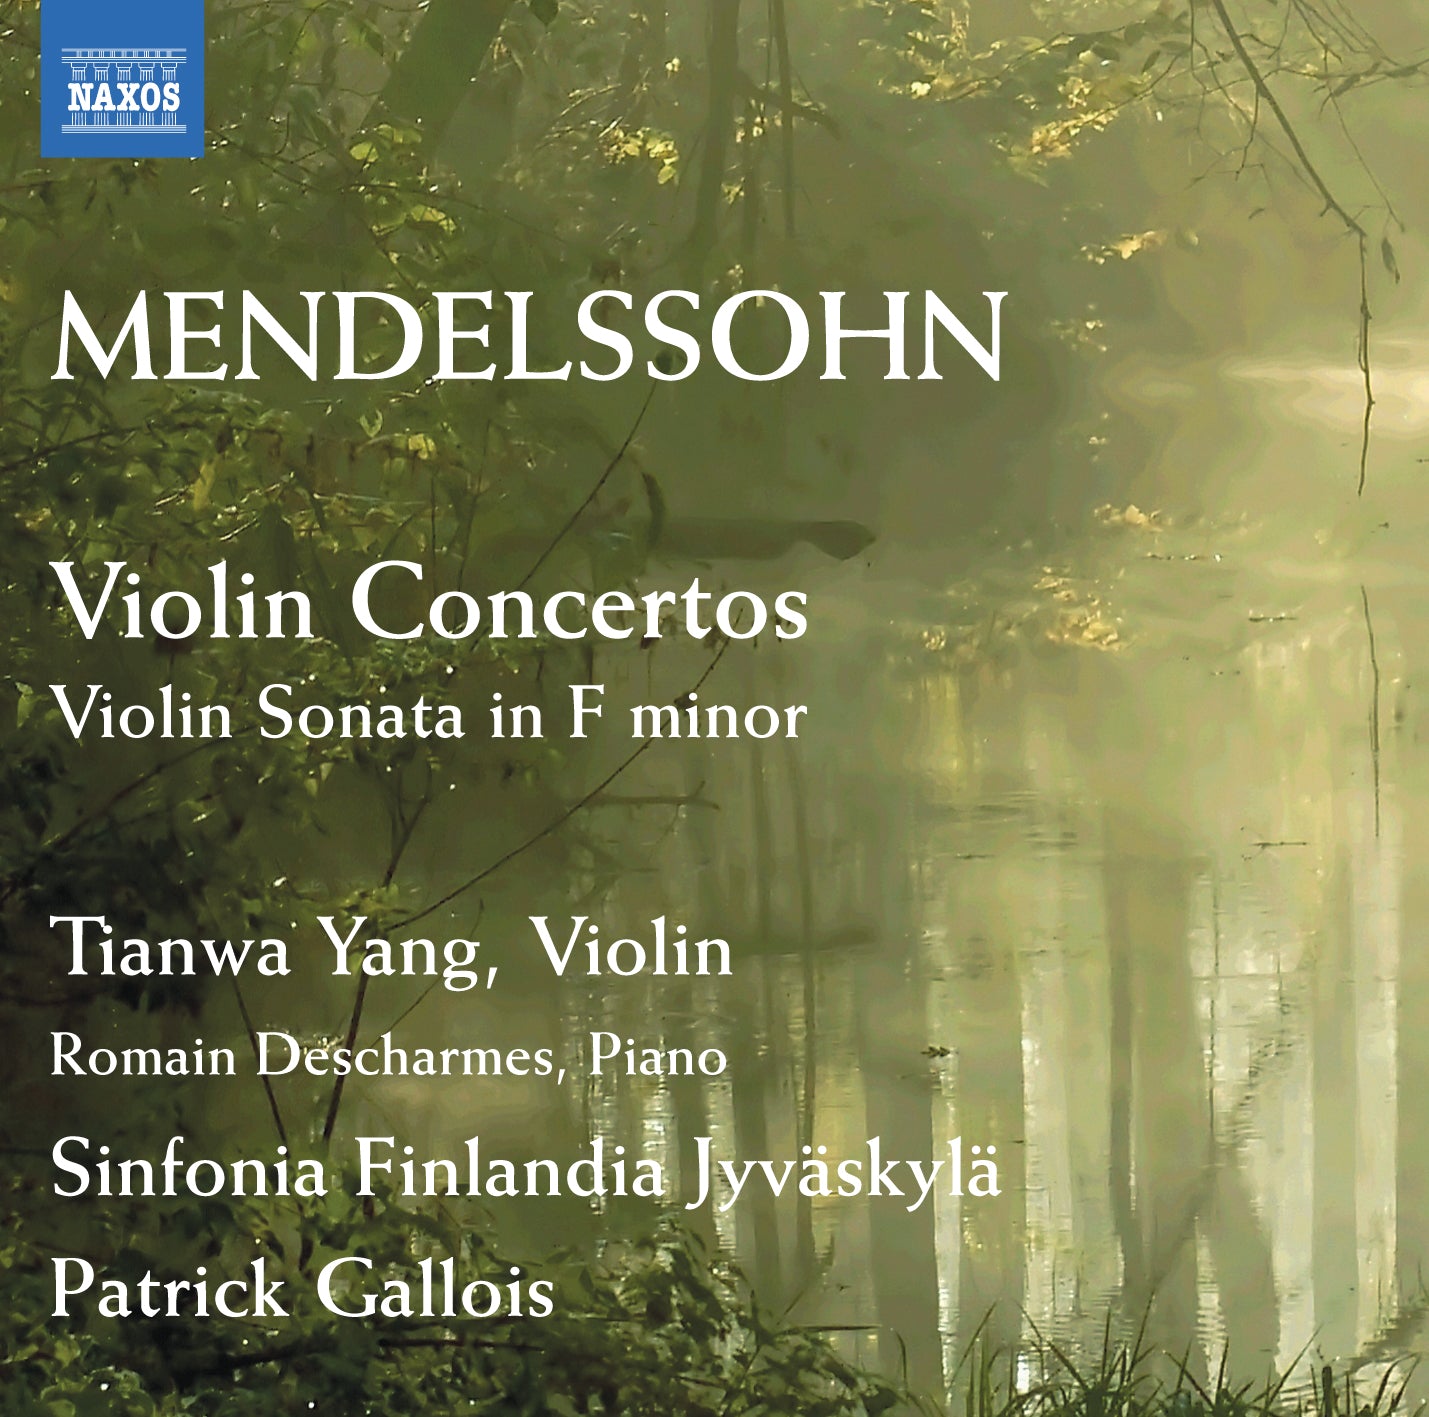 Mendelssohn: Violin Concertos / Tianwa Yang, Gallois, Sinfonia Finlandia